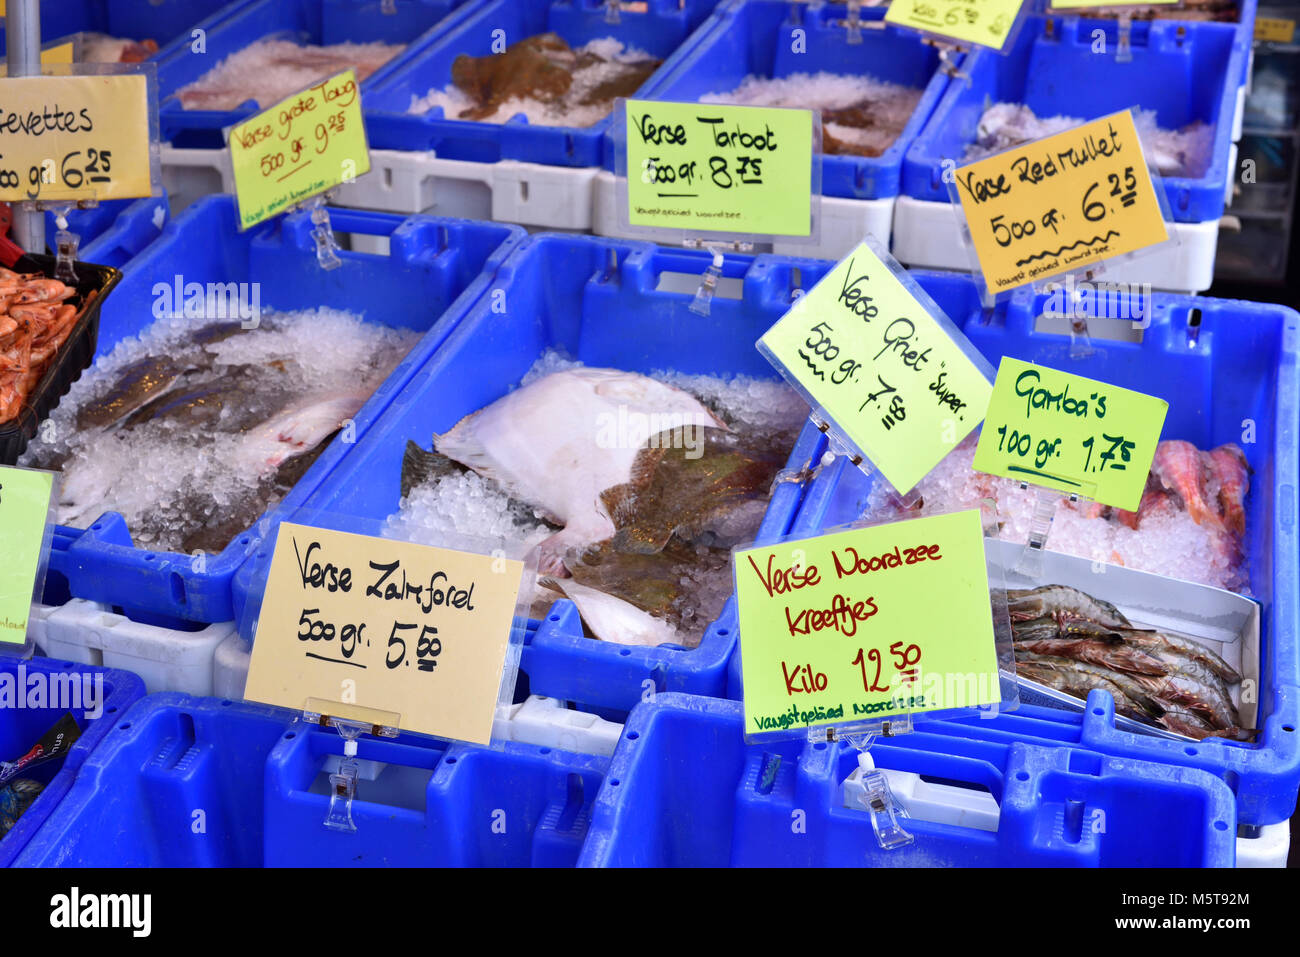 Fischmarkt in einem Supermarkt oder auf einer Straße Marktstand. Verschiedene Fische und Meeresfrüchte in Kartons. Garnelen, Fisch und anderen frischen, rohen Fisch. Stockfoto